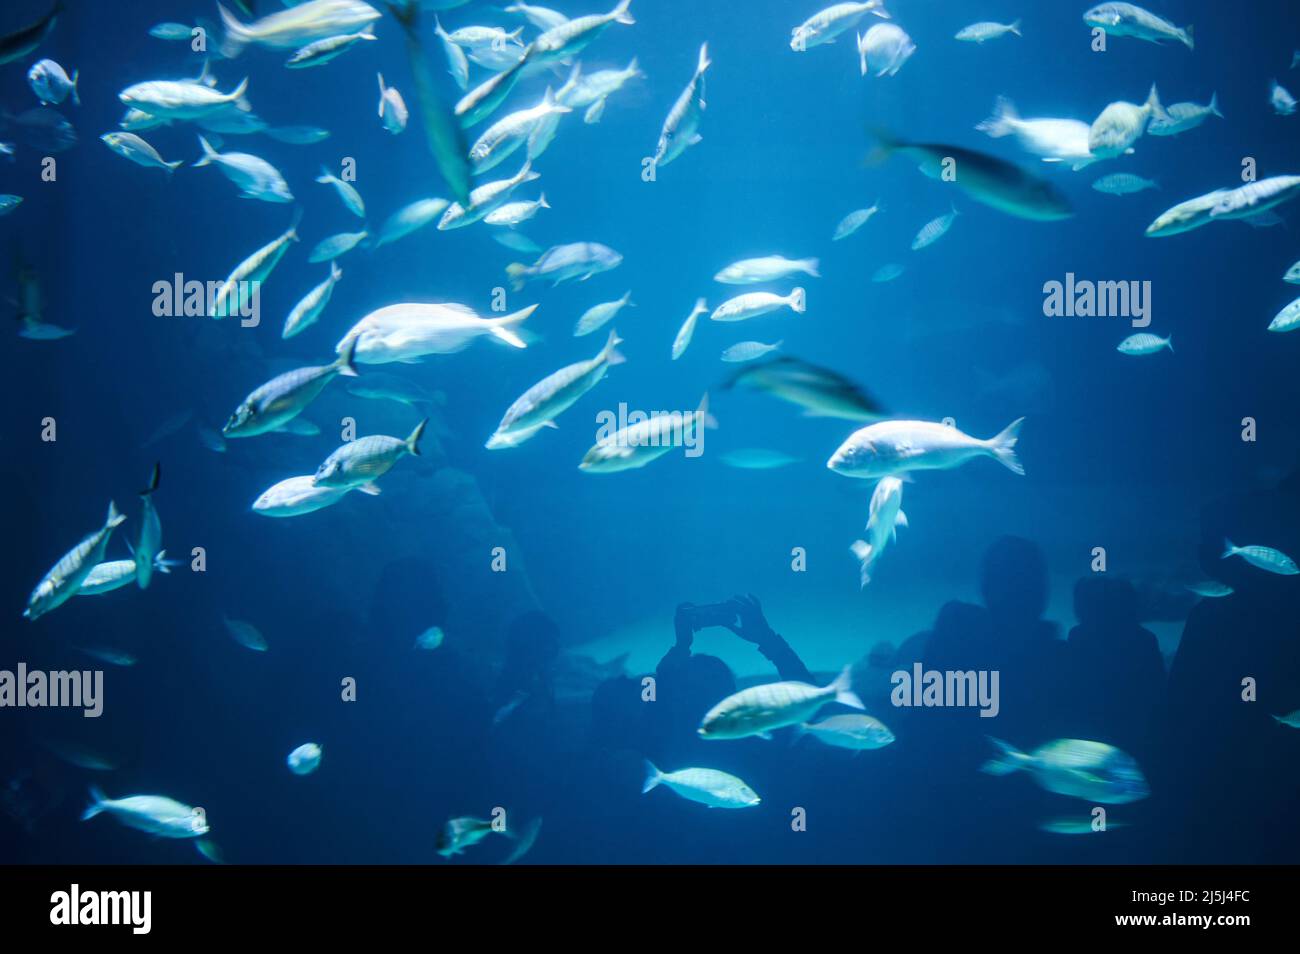 Beaucoup de poissons sur l'eau bleue avec silhouette de personnes prenant des photos Banque D'Images